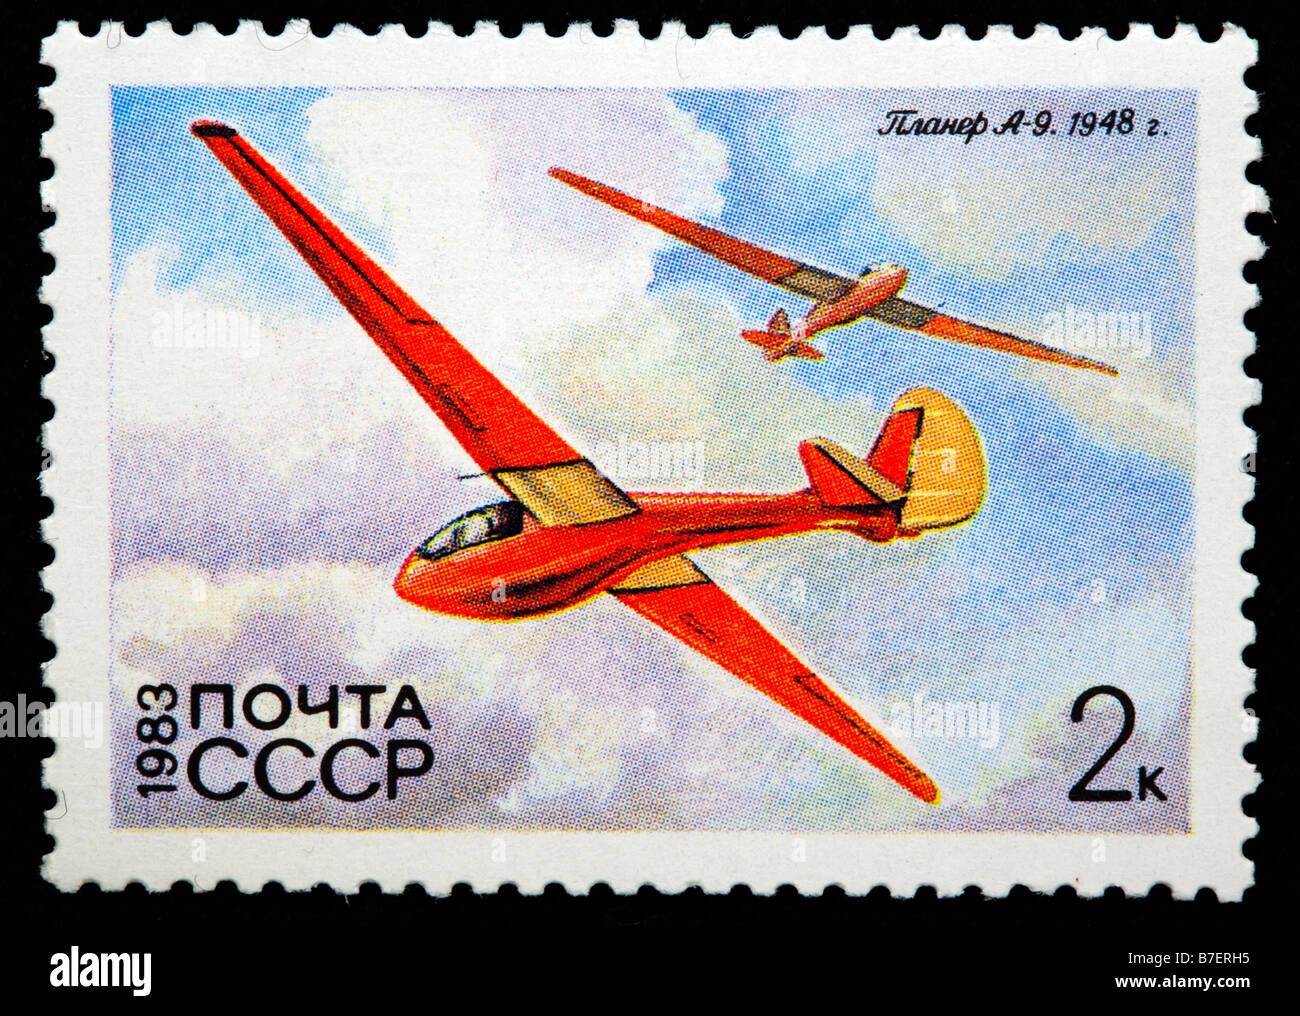 Geschichte der Luftfahrt, russische Segelflugzeug "A 9" (1948), Briefmarke, UdSSR, Russland, 1983 Stockfoto